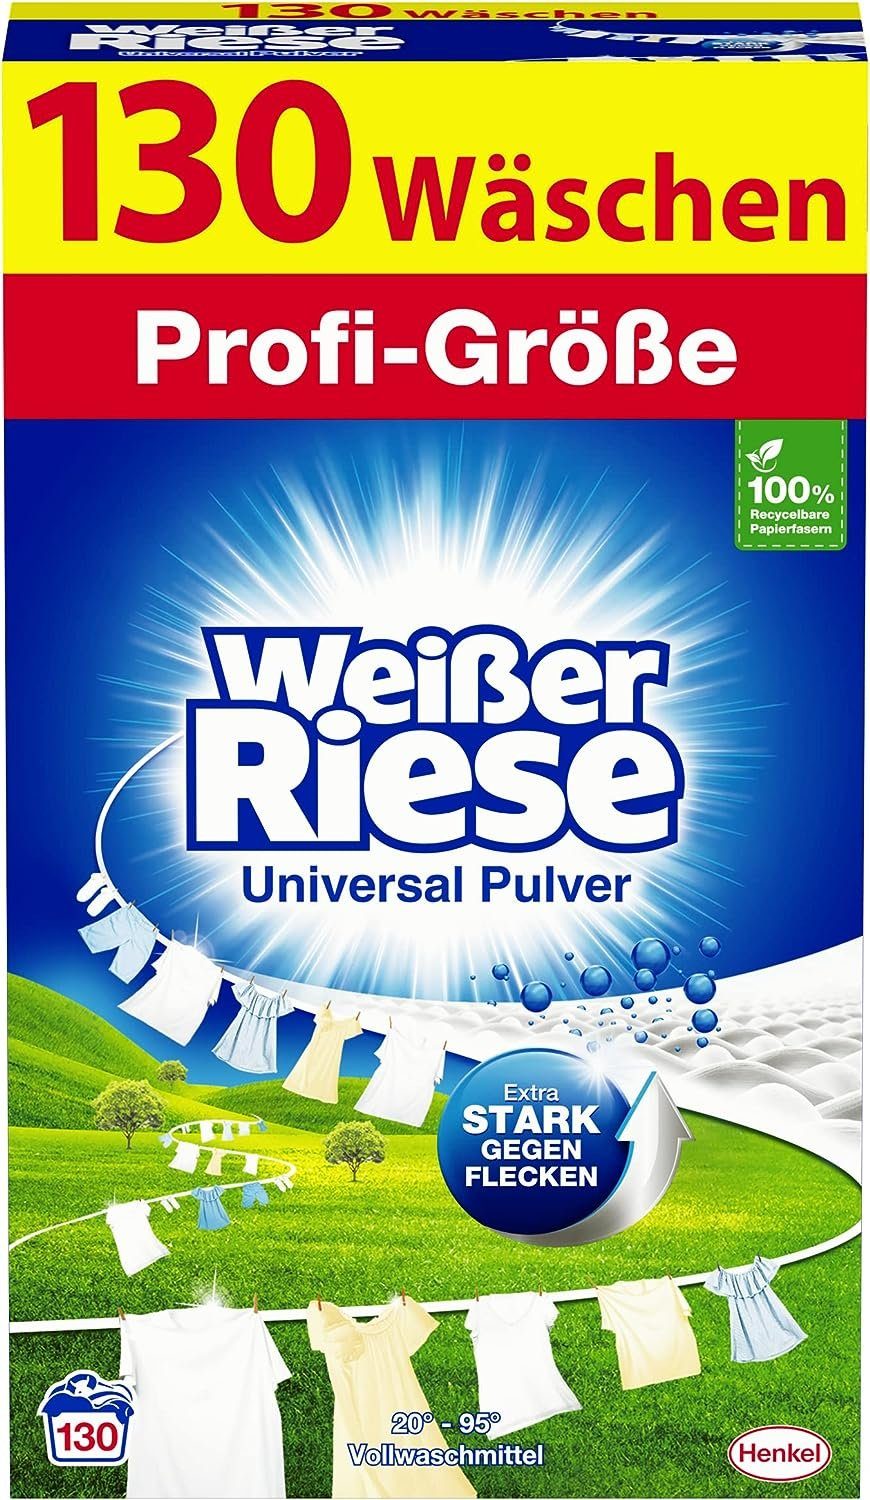 Pack Vollwaschmittel (1 1er Weißer Riese x Weißer Pulver, Riese Universal Waschladungen) 130